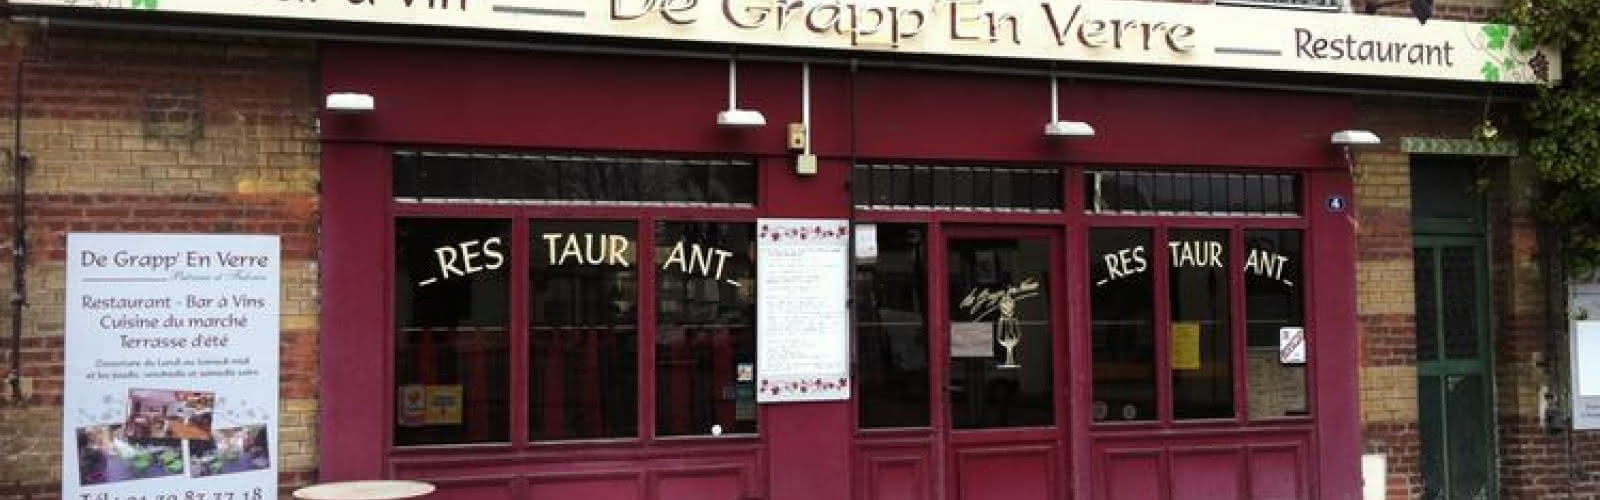 Facade du restaurant De Grapp'en Verre